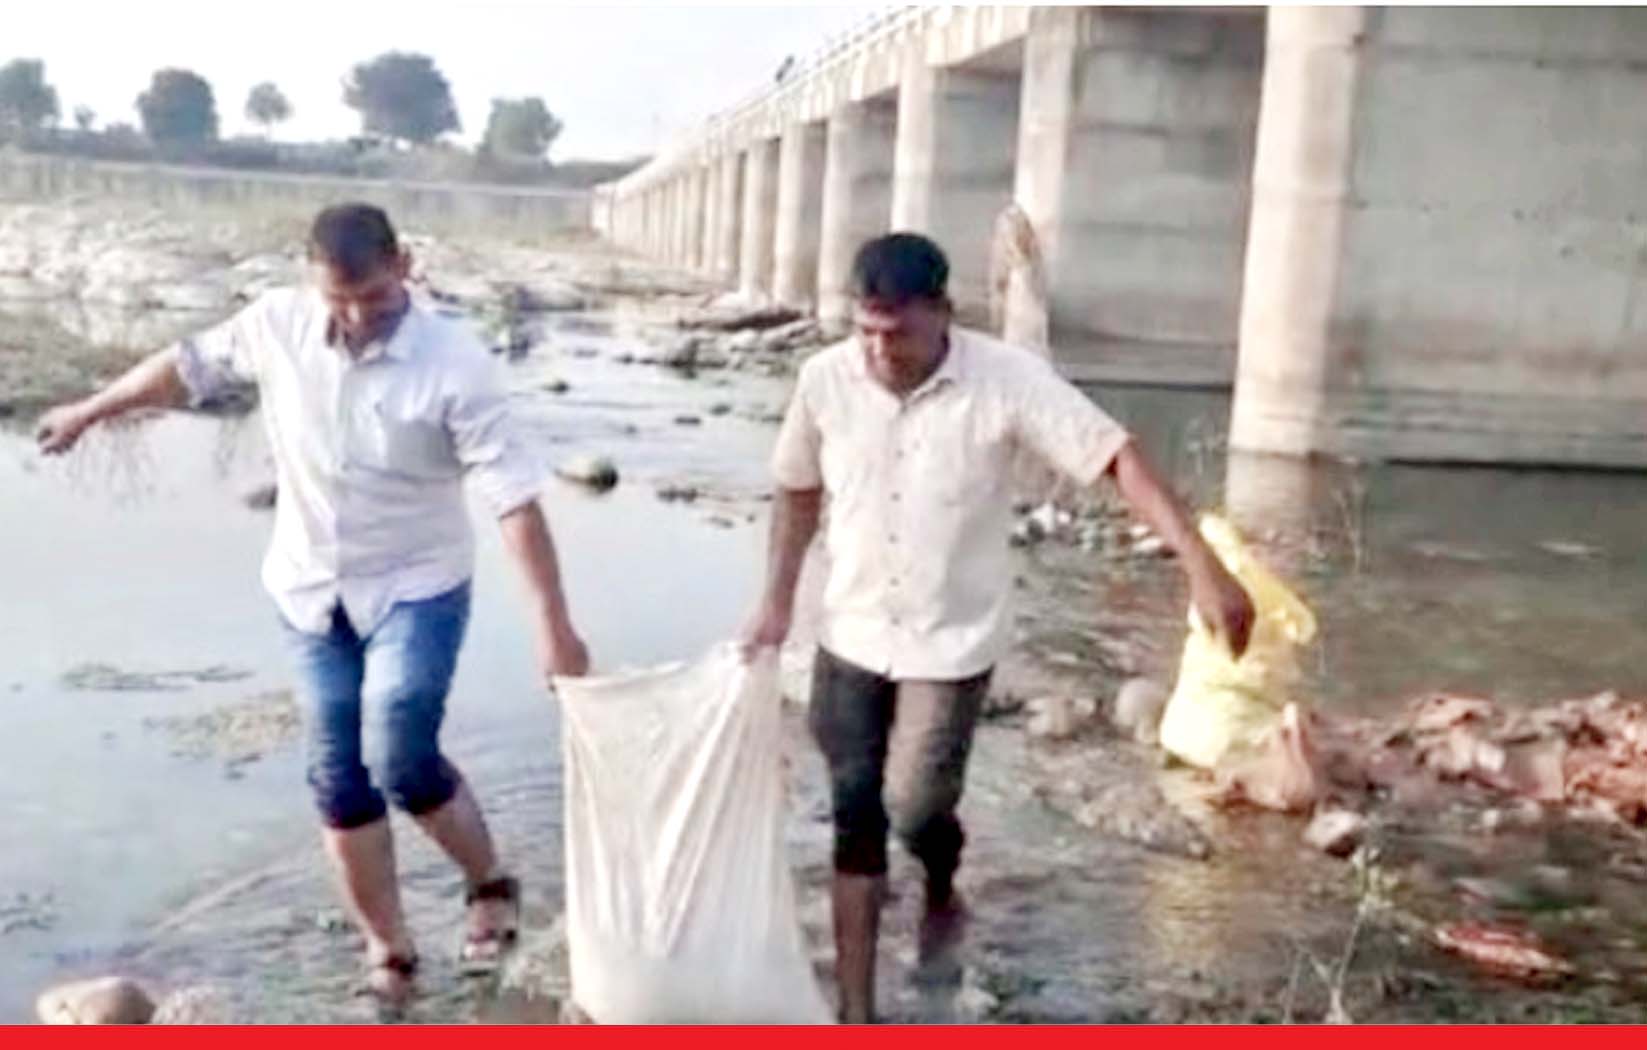 उदयपुर रेलवे ट्रैक ब्लास्ट के 3 दिन बाद नदी में मिली 2 क्विंटल विस्फोटक सामग्री